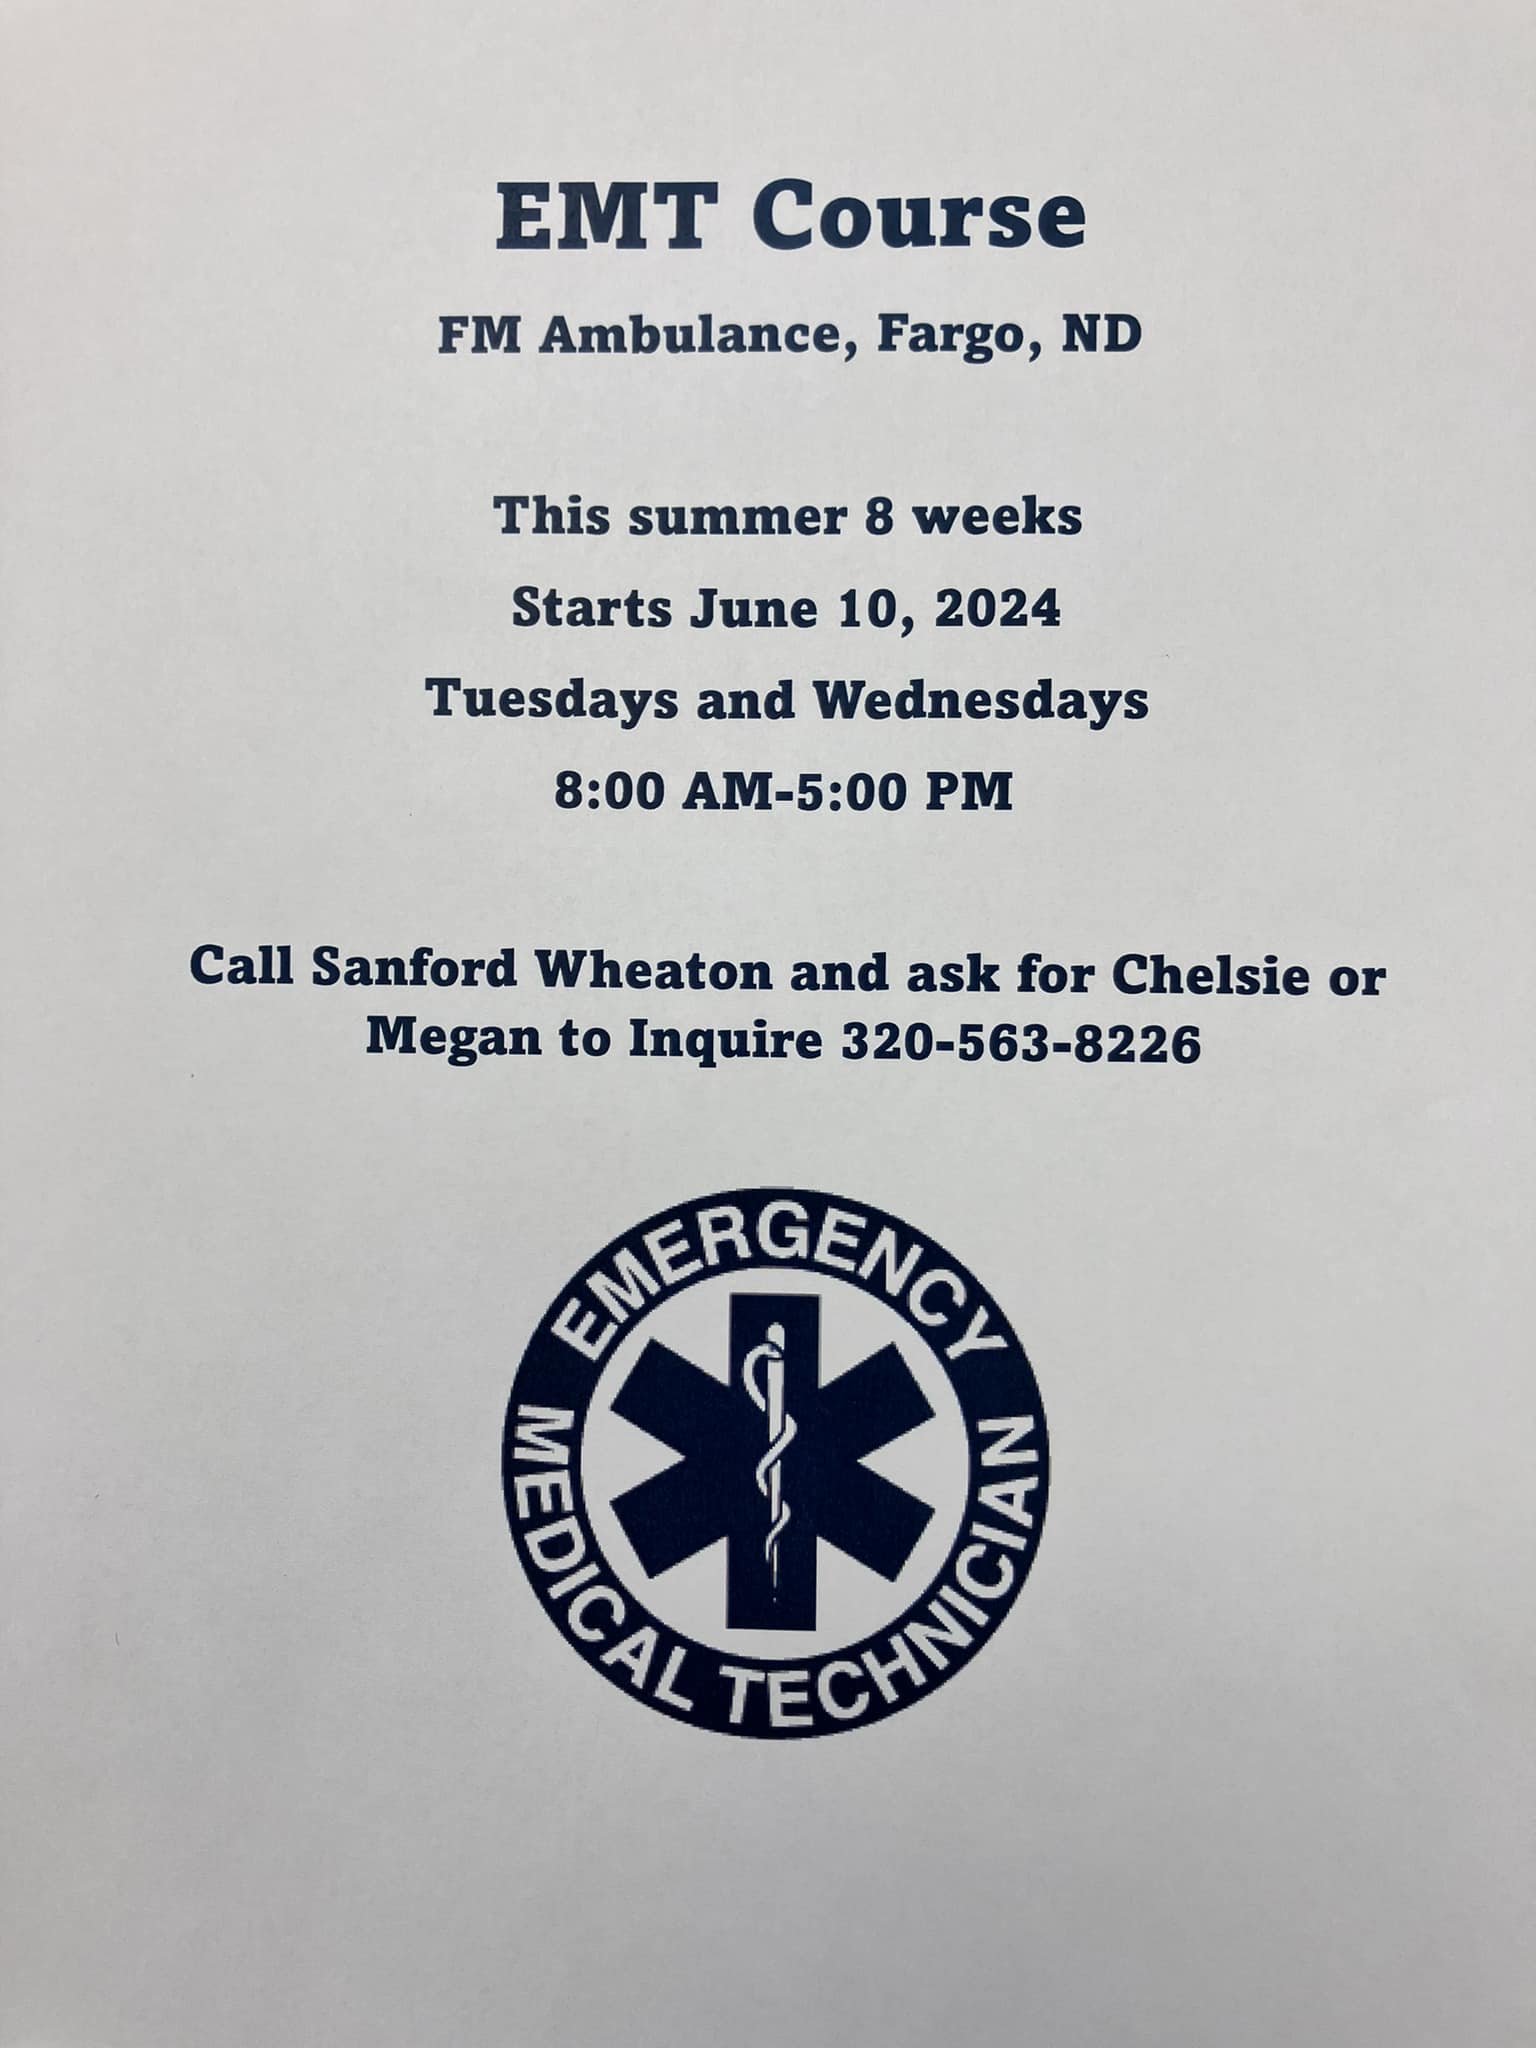 Ambulance Service of Wheaton